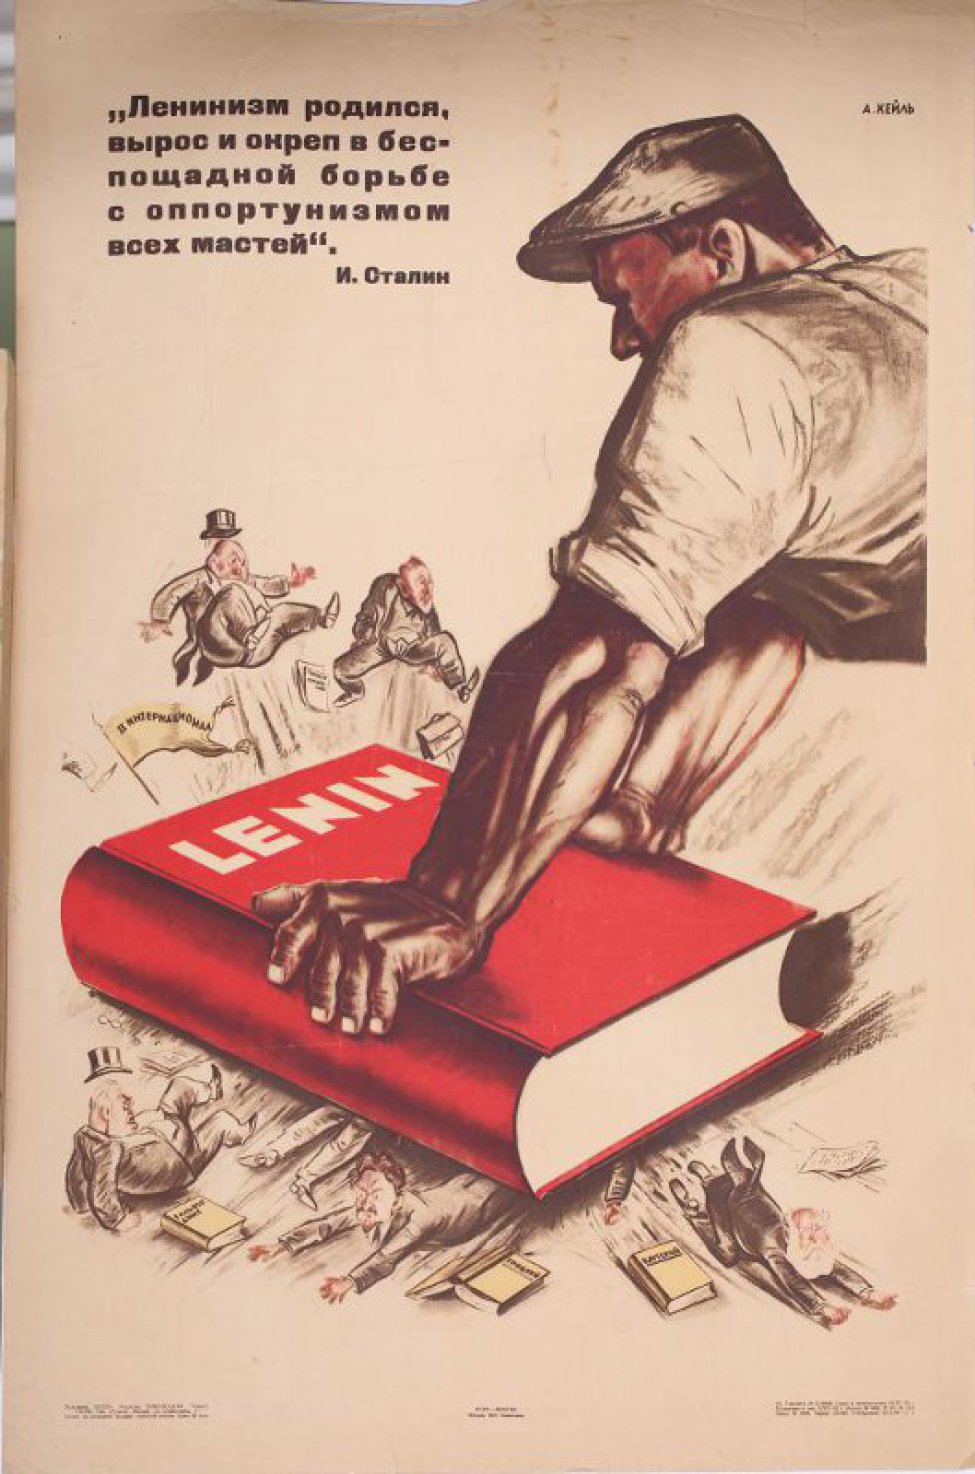 Изображен справа в профиль рабочий, держащий руками том сочинений Ленина  с надписью:" Lenin".